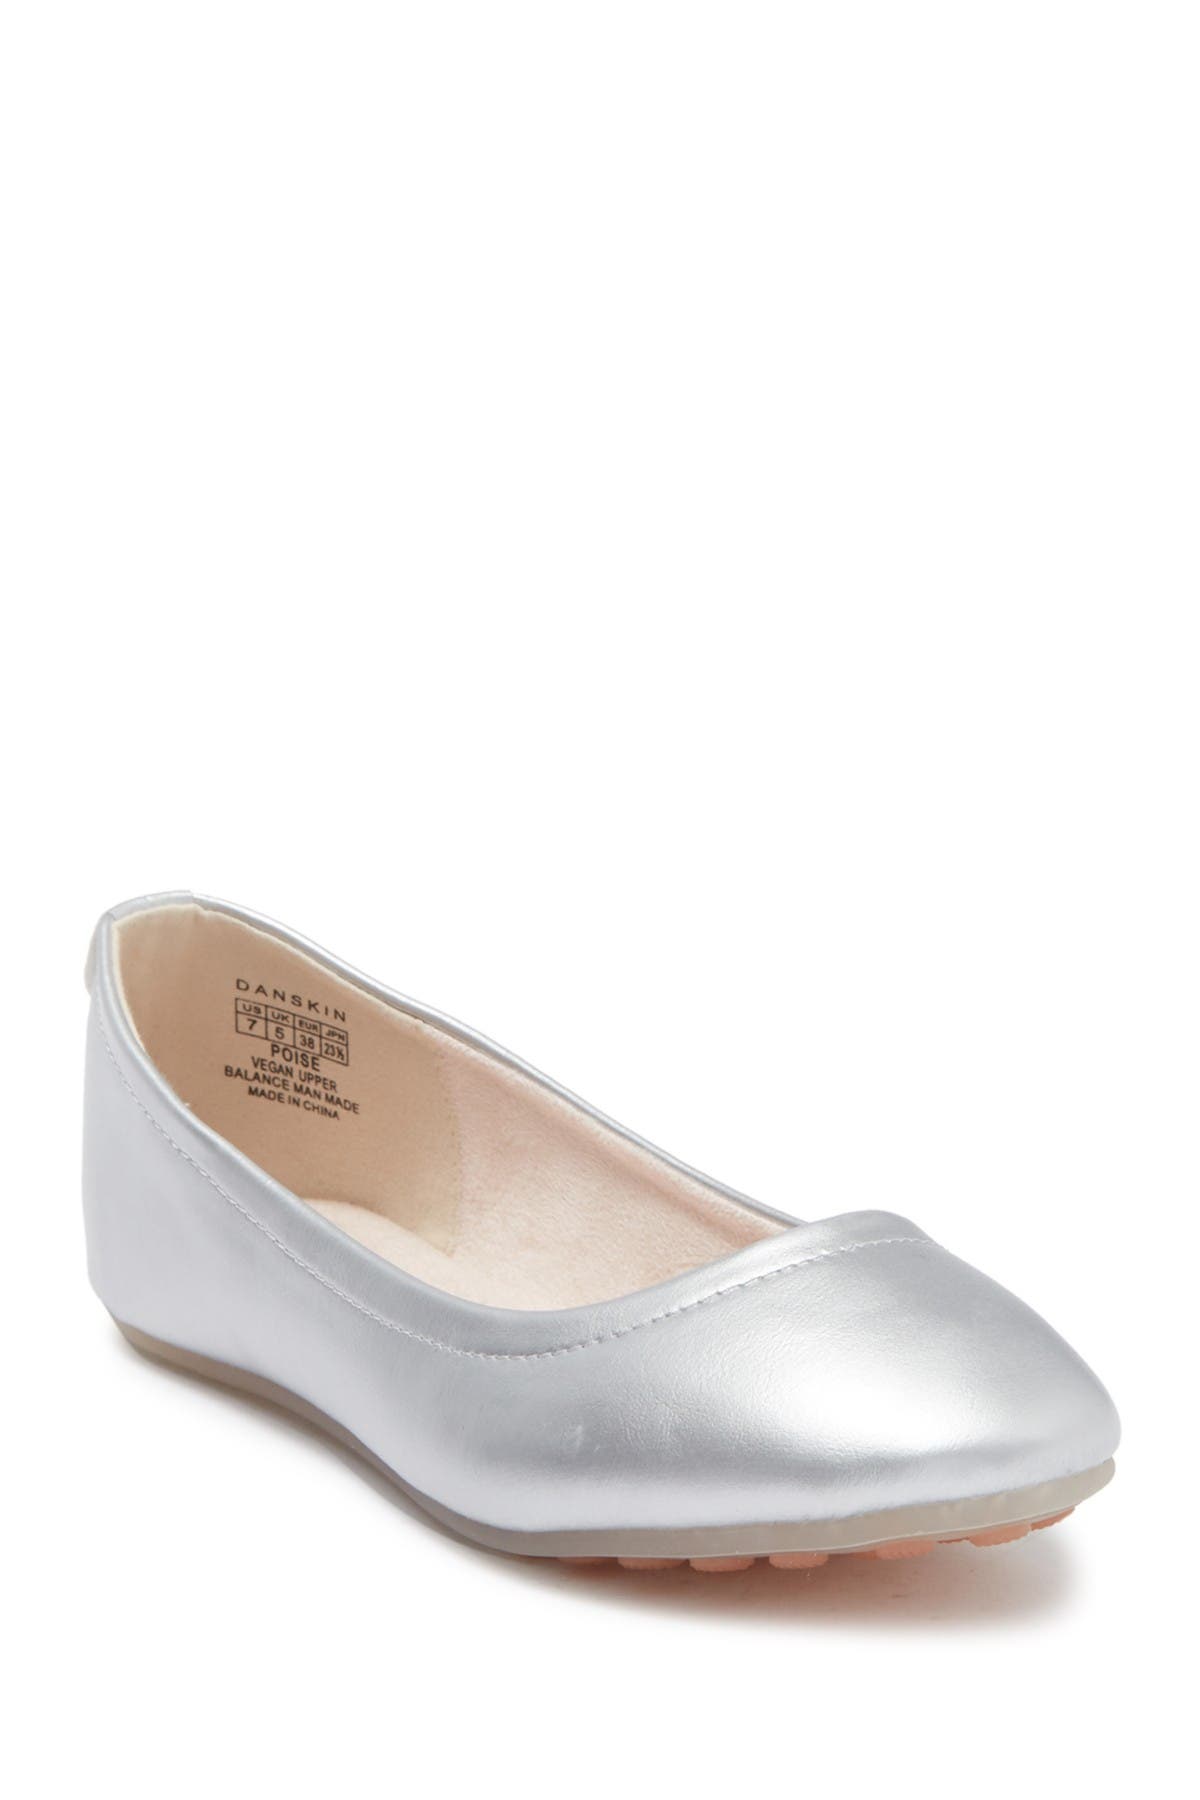 Danskin Poise Classic Gel Ballet Flat In Grey